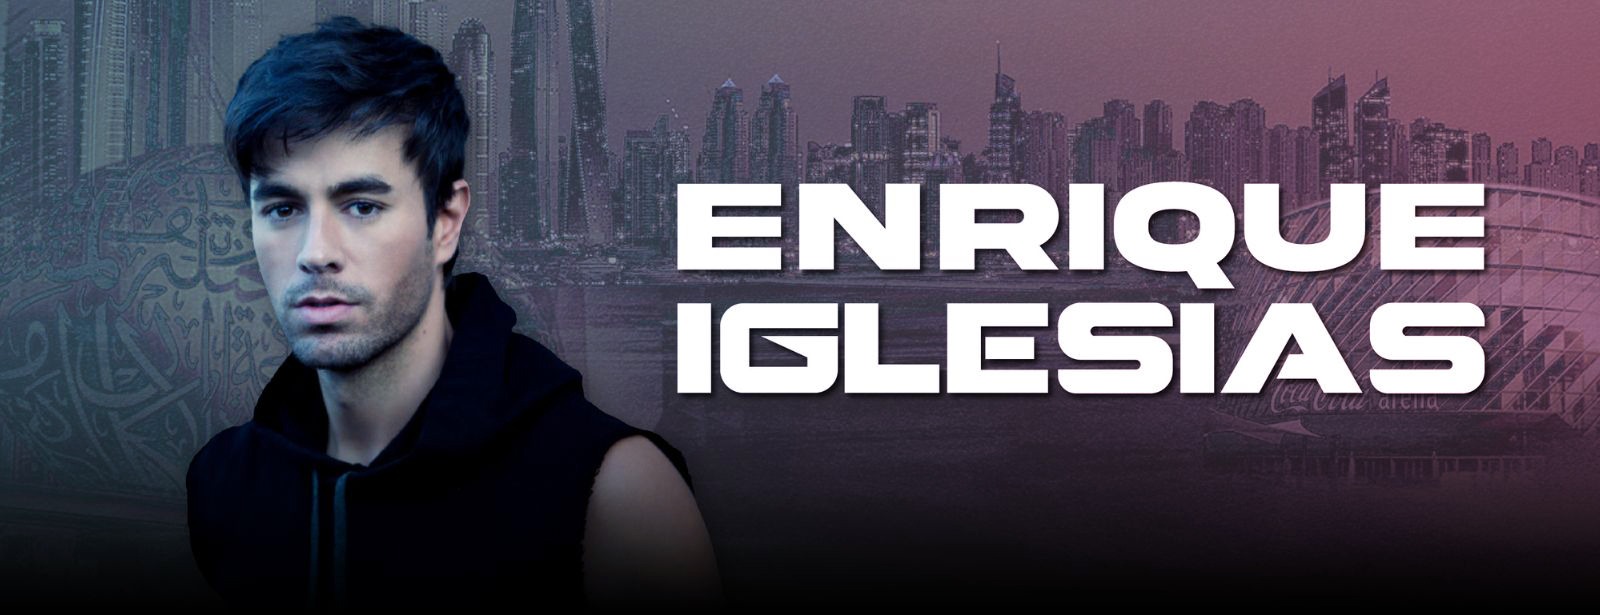 Enrique Iglesias Live at Coca-Cola Arena, Dubai - Coming Soon in UAE